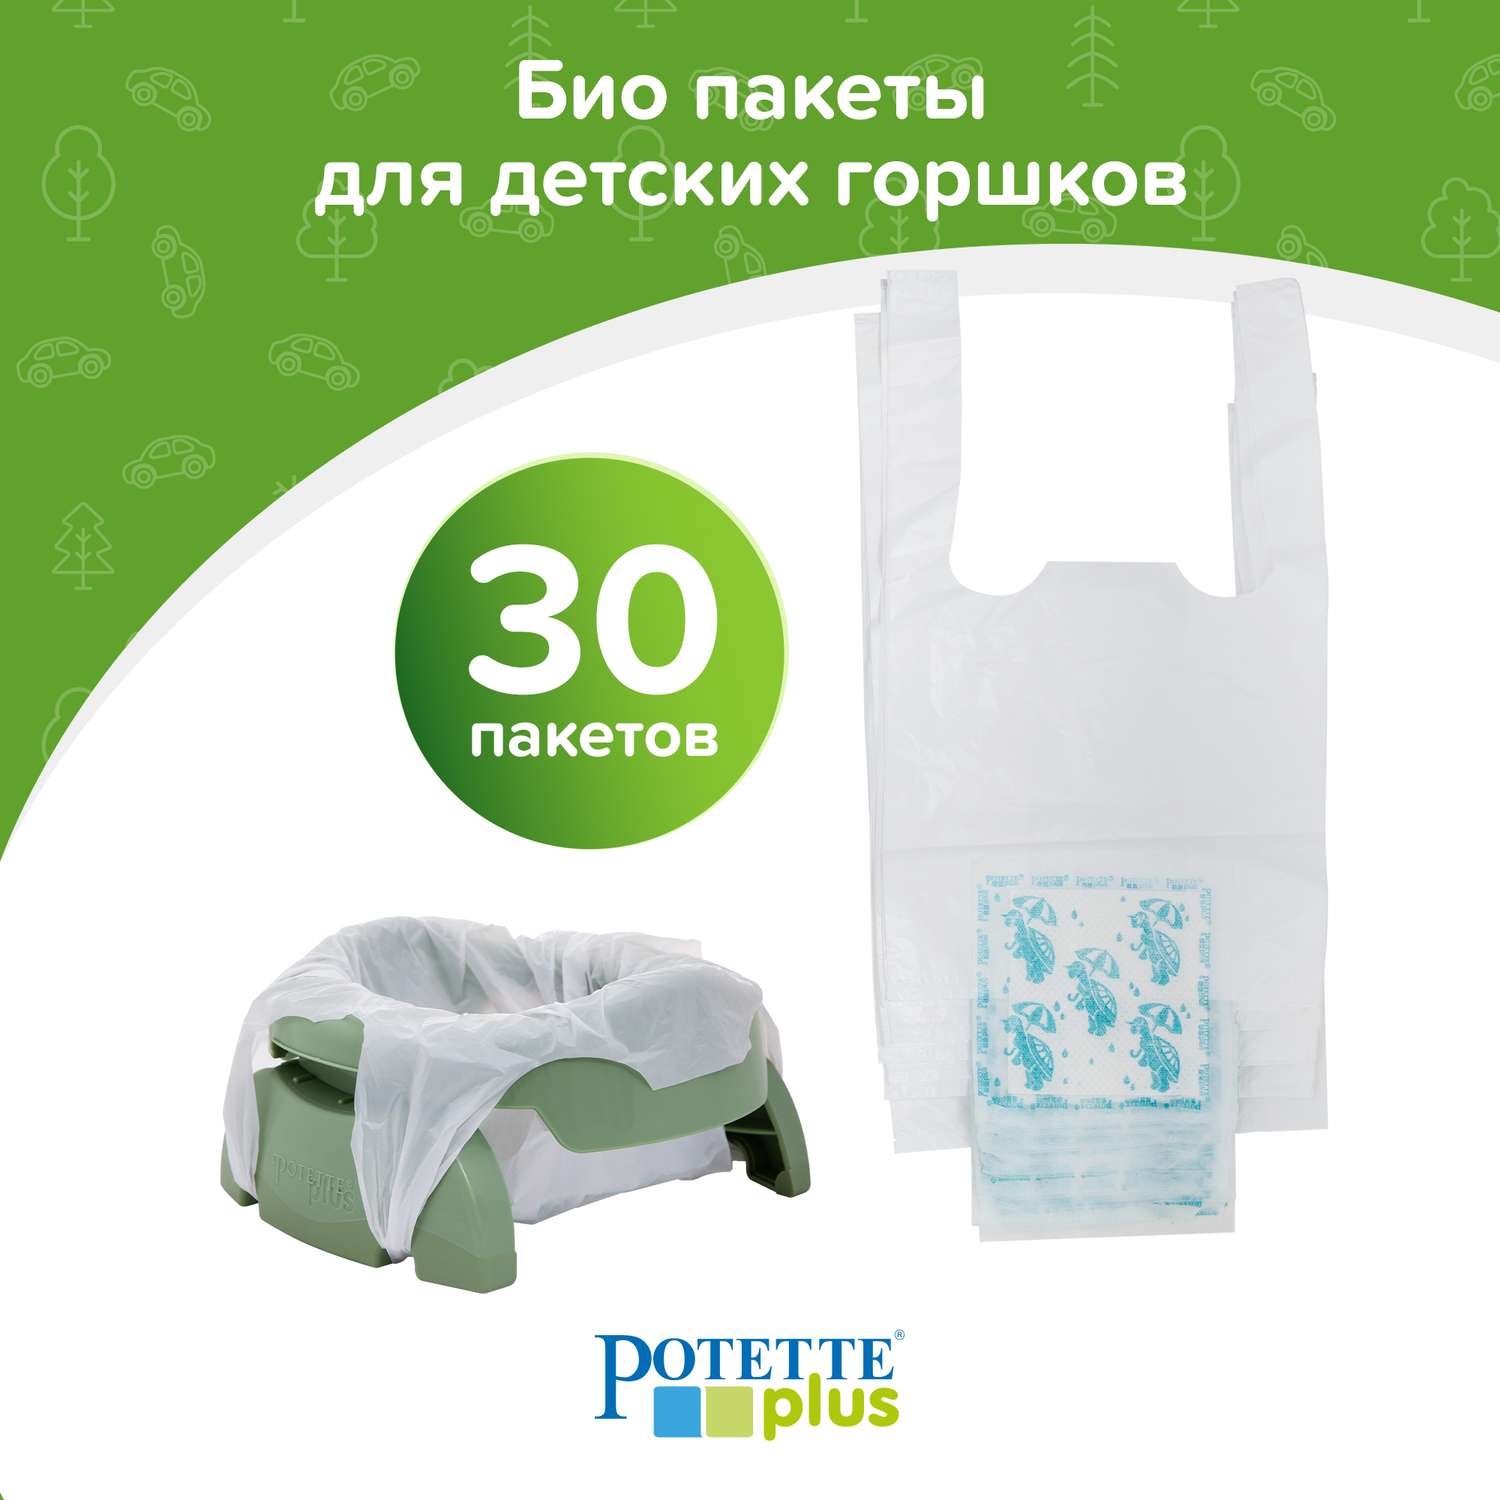 Пакеты Potette Plus для дорожных горшков сменные одноразовые 30 шт - фото 1